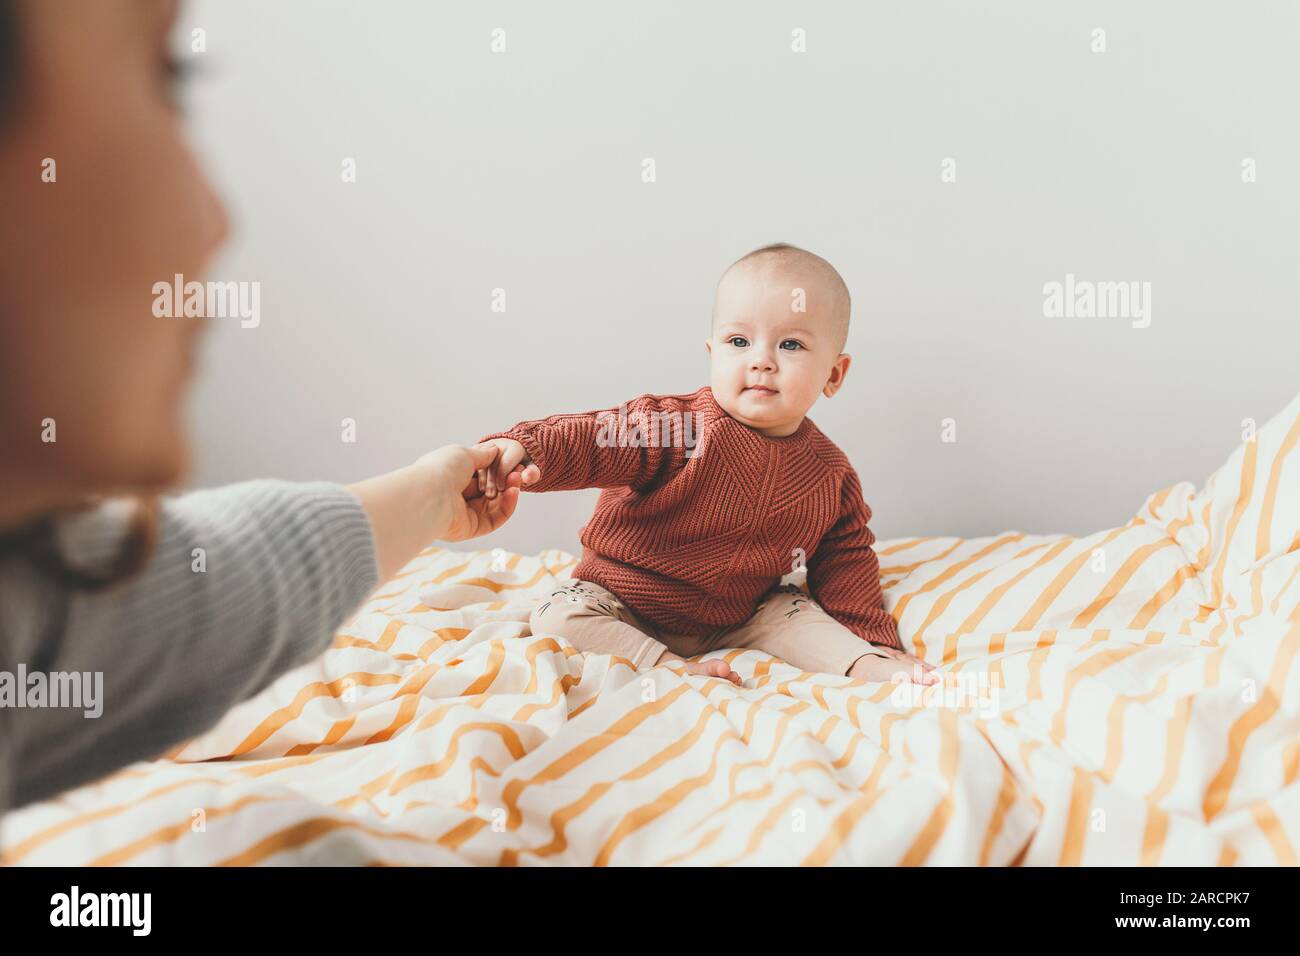 Belle petite fille de bébé sur le lit dans un confortable pull brun souriant. Concept de maternité et d'enfance. Adorable petite fille de six mois posée sur le mauvais et regardant dans l'appareil photo. La mère tient une petite main. Banque D'Images